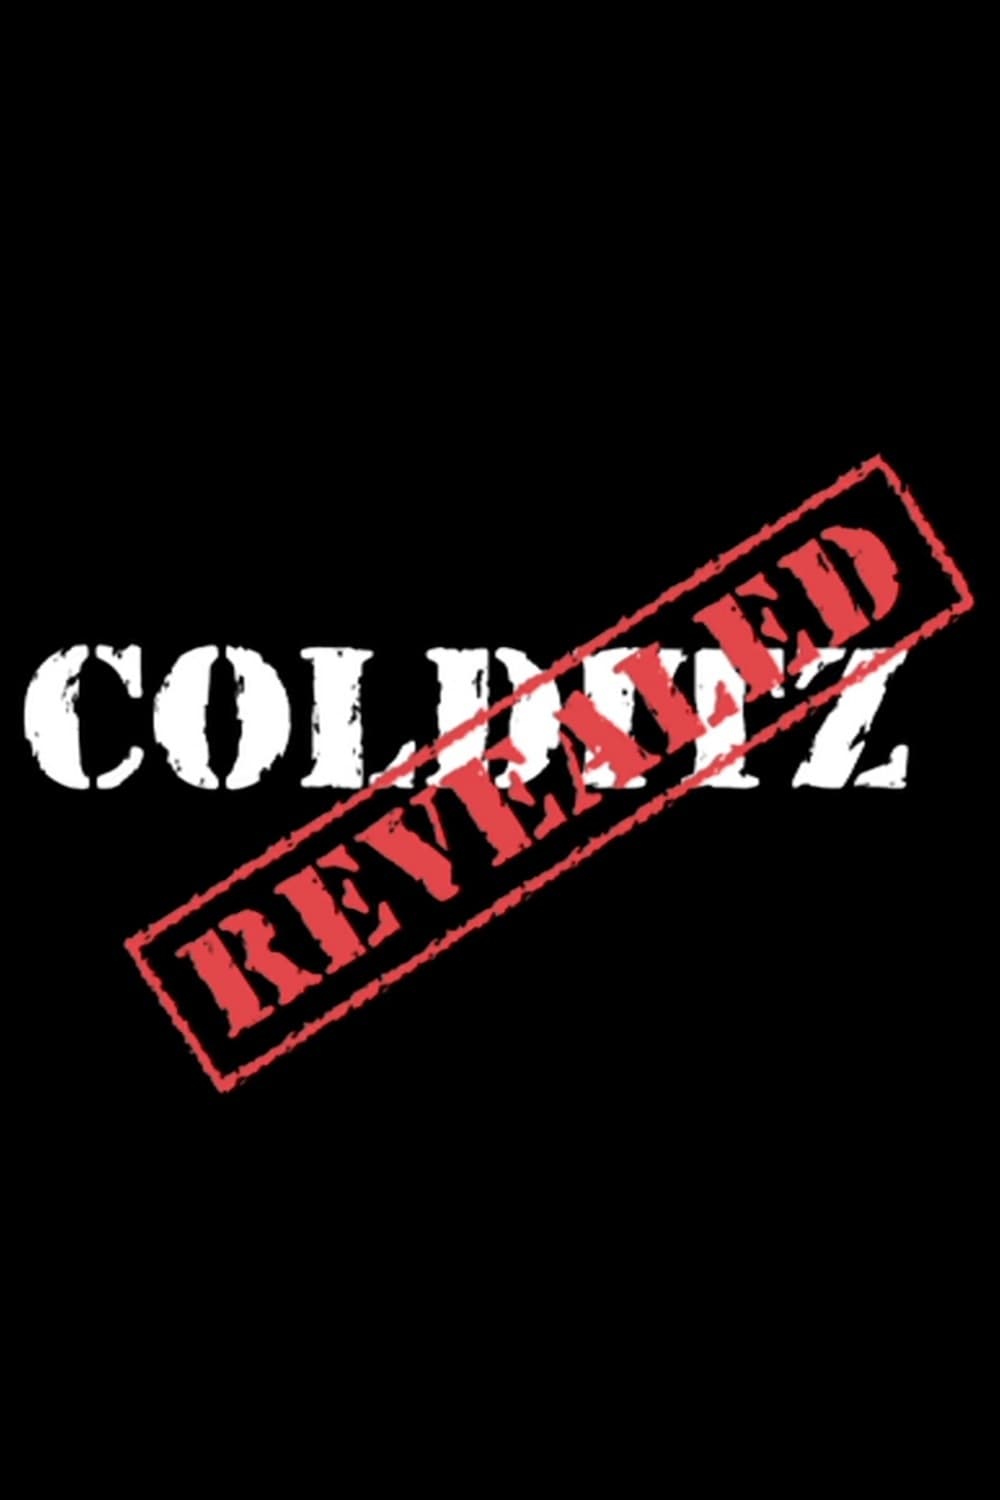 Colditz Revealed: Life Inside the Colditz Castle